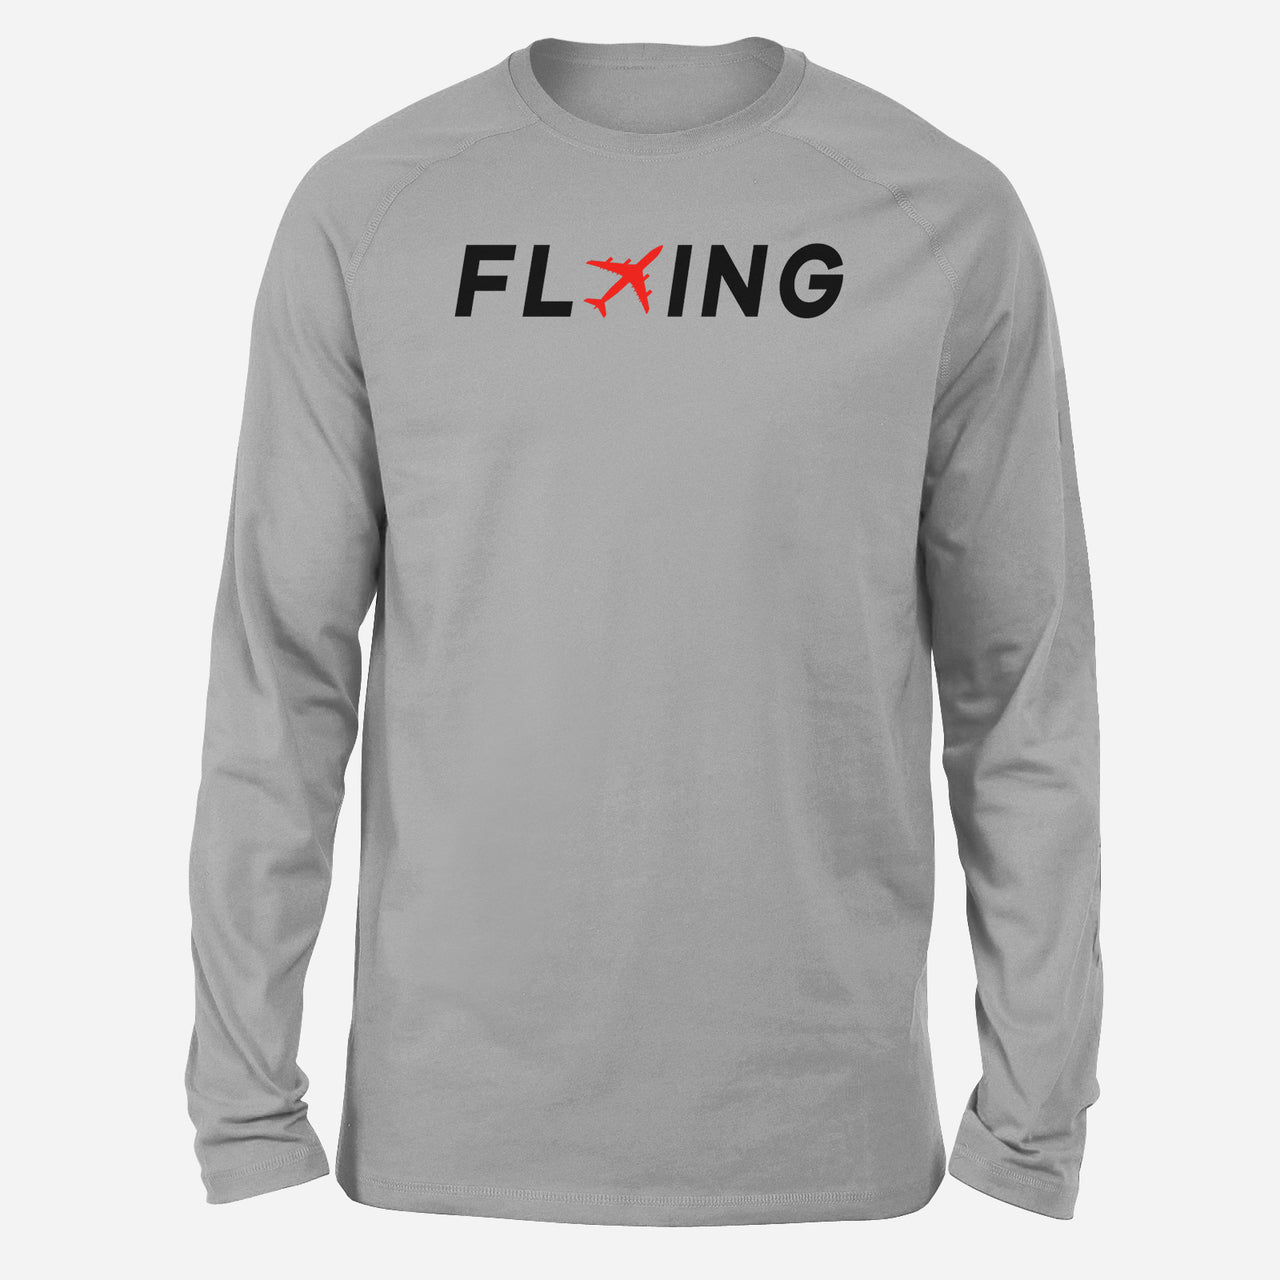 Flying Designed Long-Sleeve T-Shirts